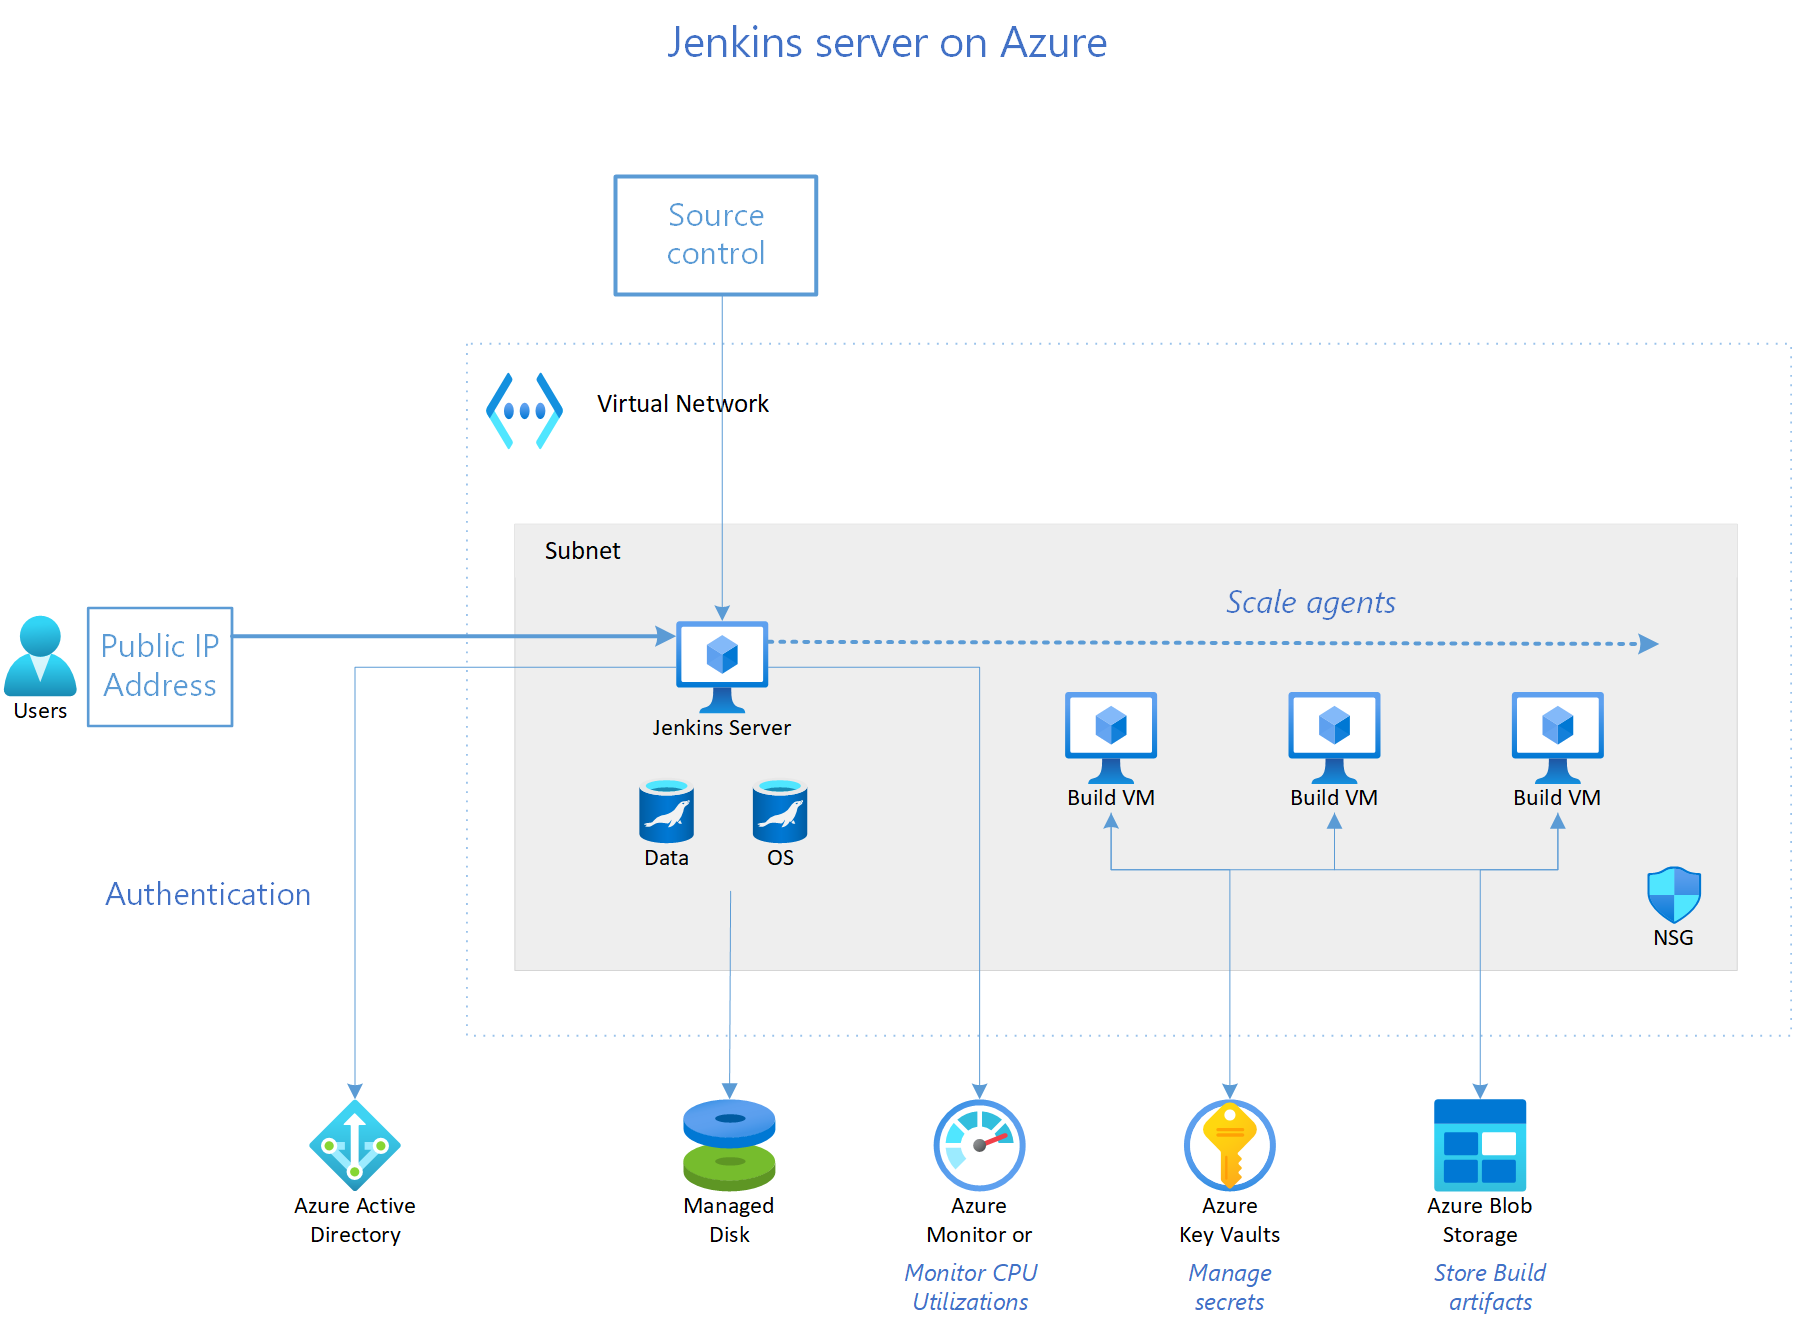 Jenkins server running on Azure